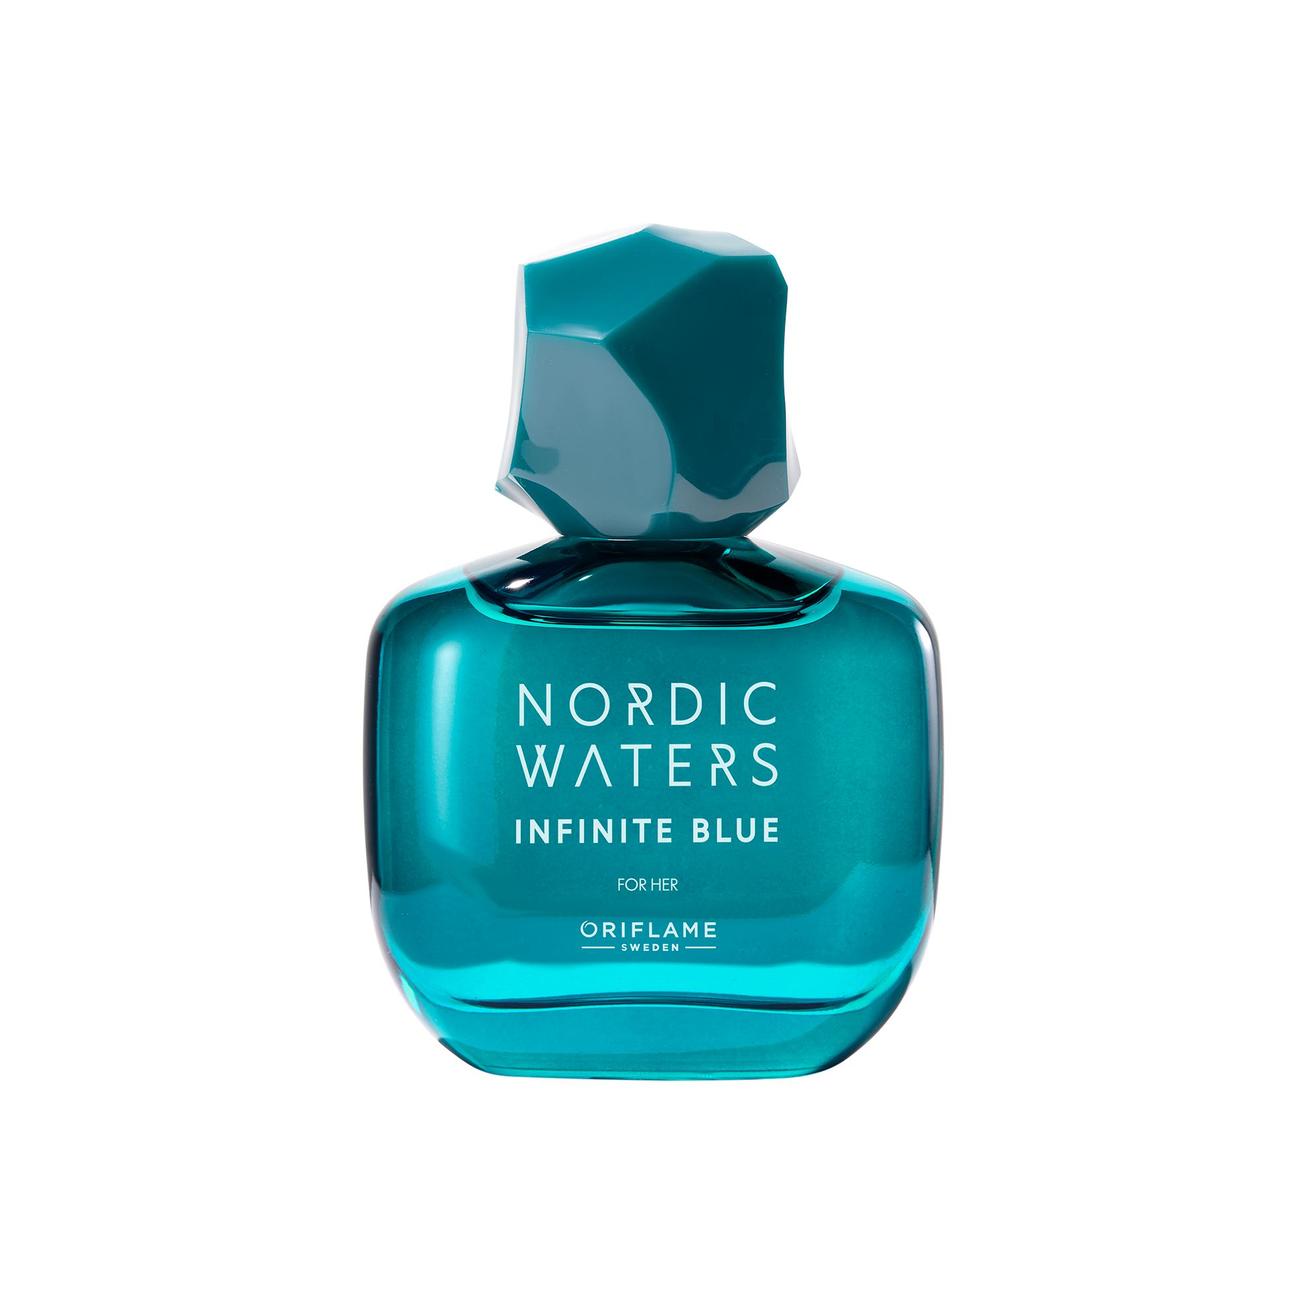 Oferta de Eau de Parfum Nordic Waters Infinite Blue para Ella por 28,99€ en Oriflame